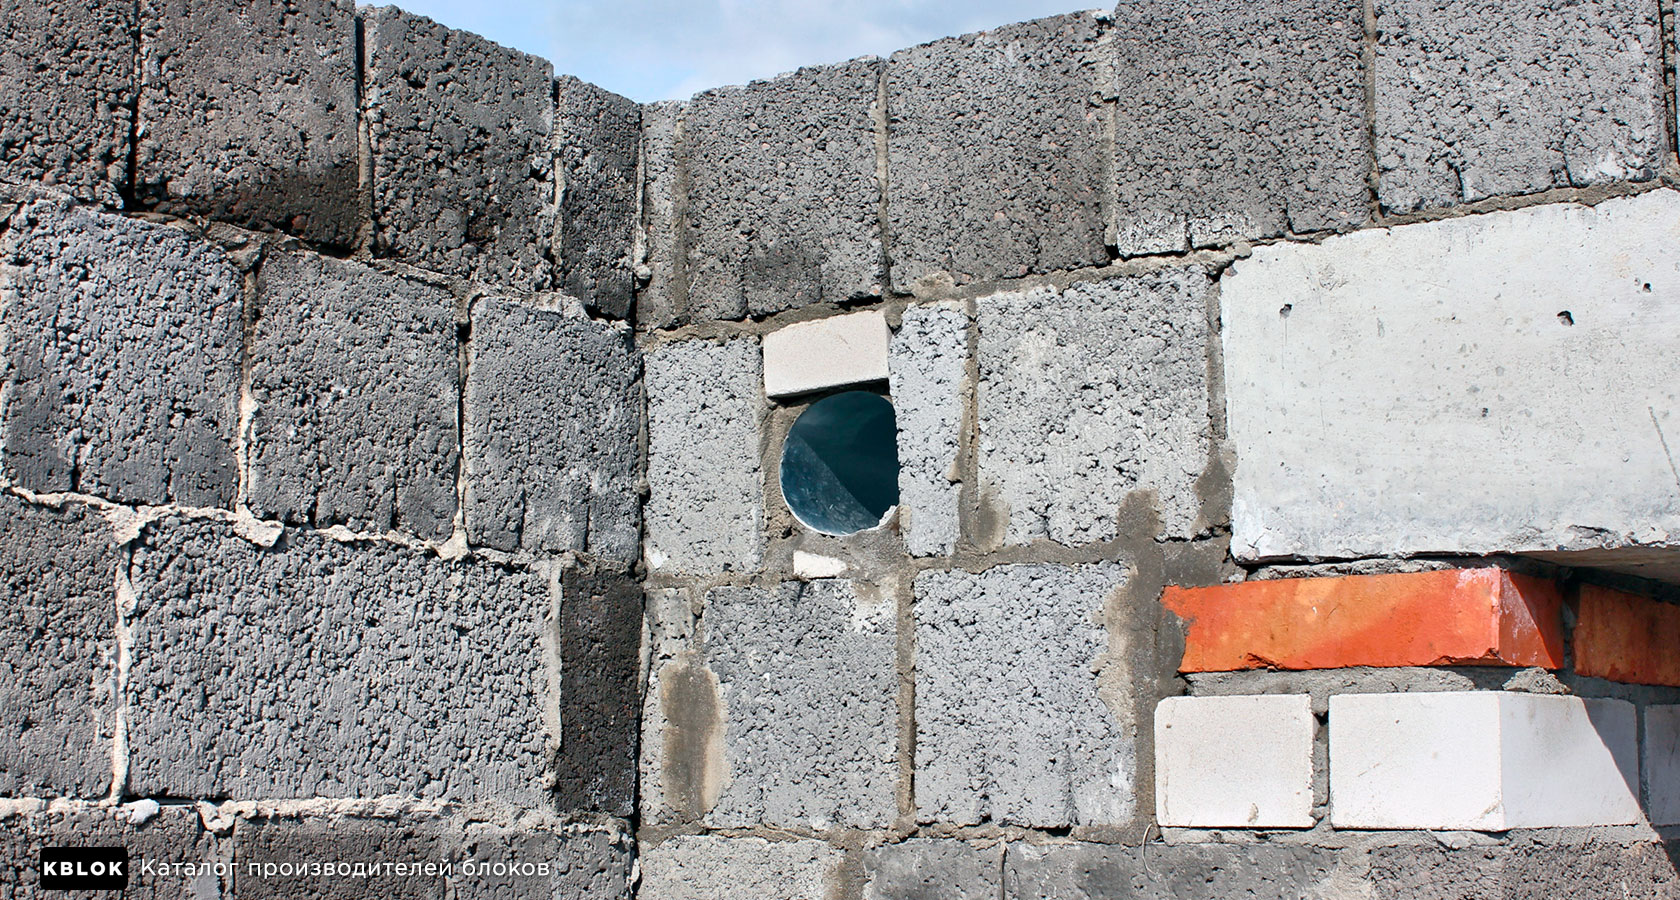  керамзитобетонные блоки использовать для несущих стен: плюсы и .